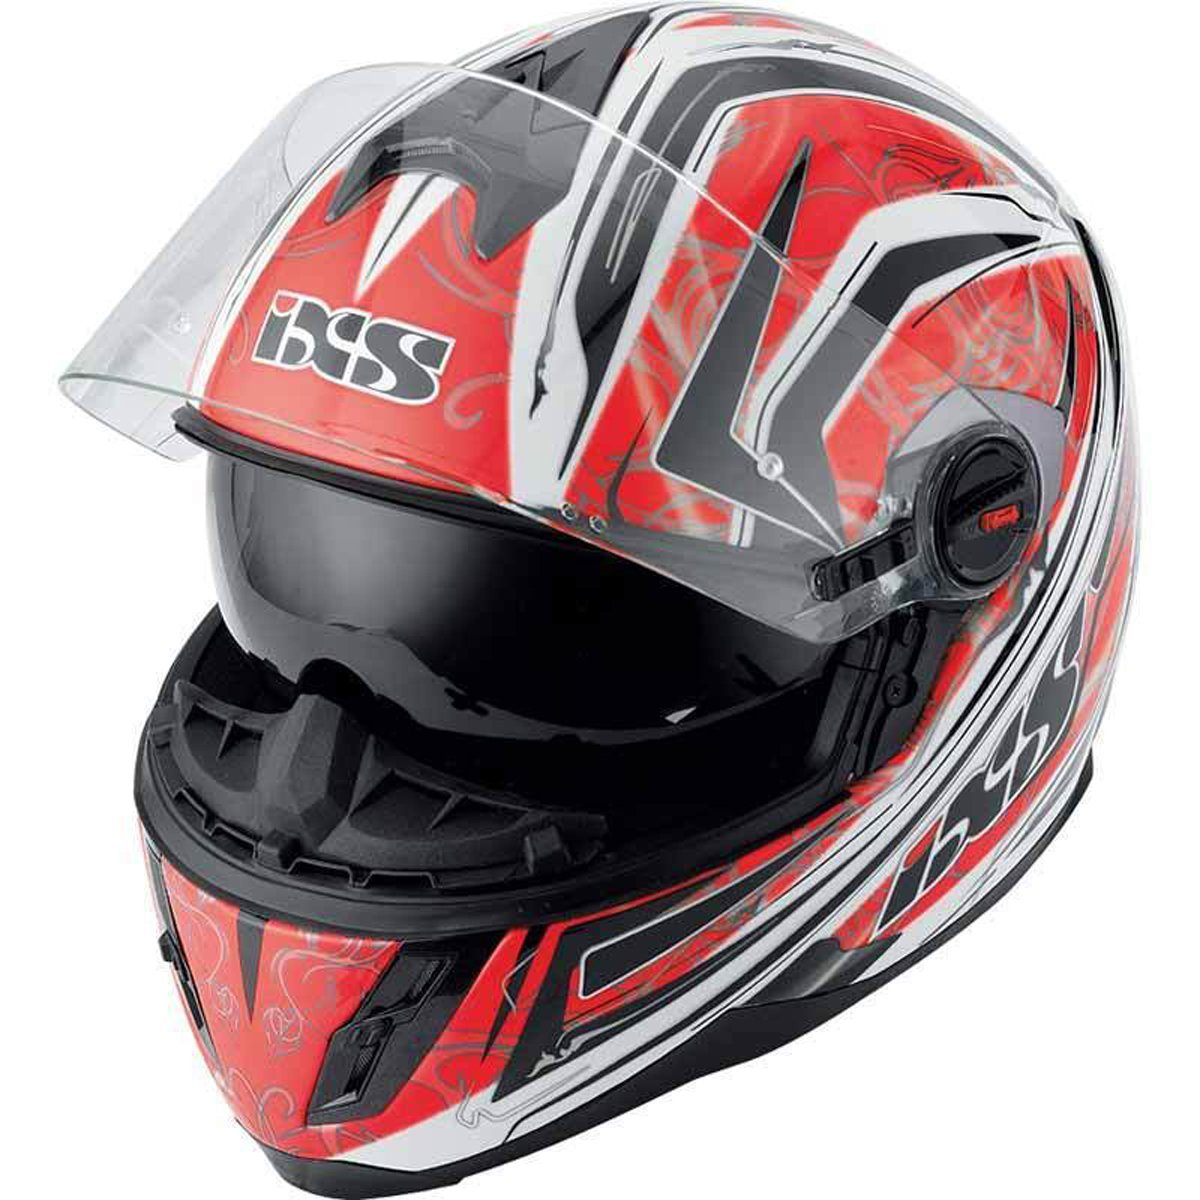 IXS Motorradhelm IXS HX 397 Blaze Rot-Weiß-Schwarz